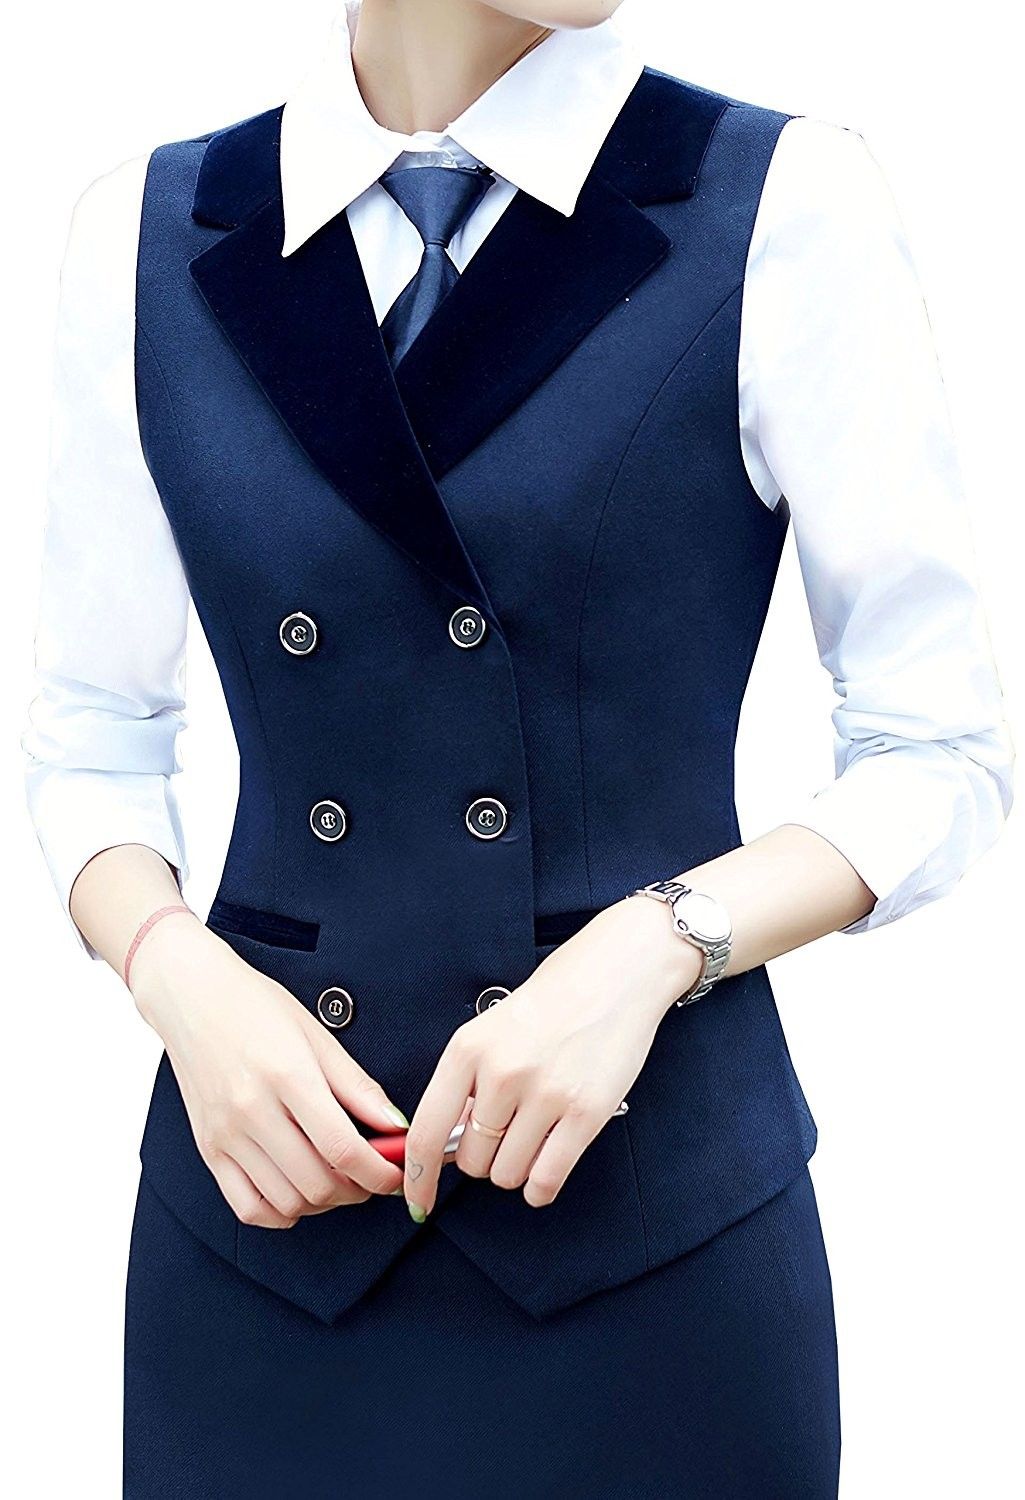 Women Breasted Lapels Slim Fit Uniform Suit Waistcoat Dressy Vest – Blue – C8186…